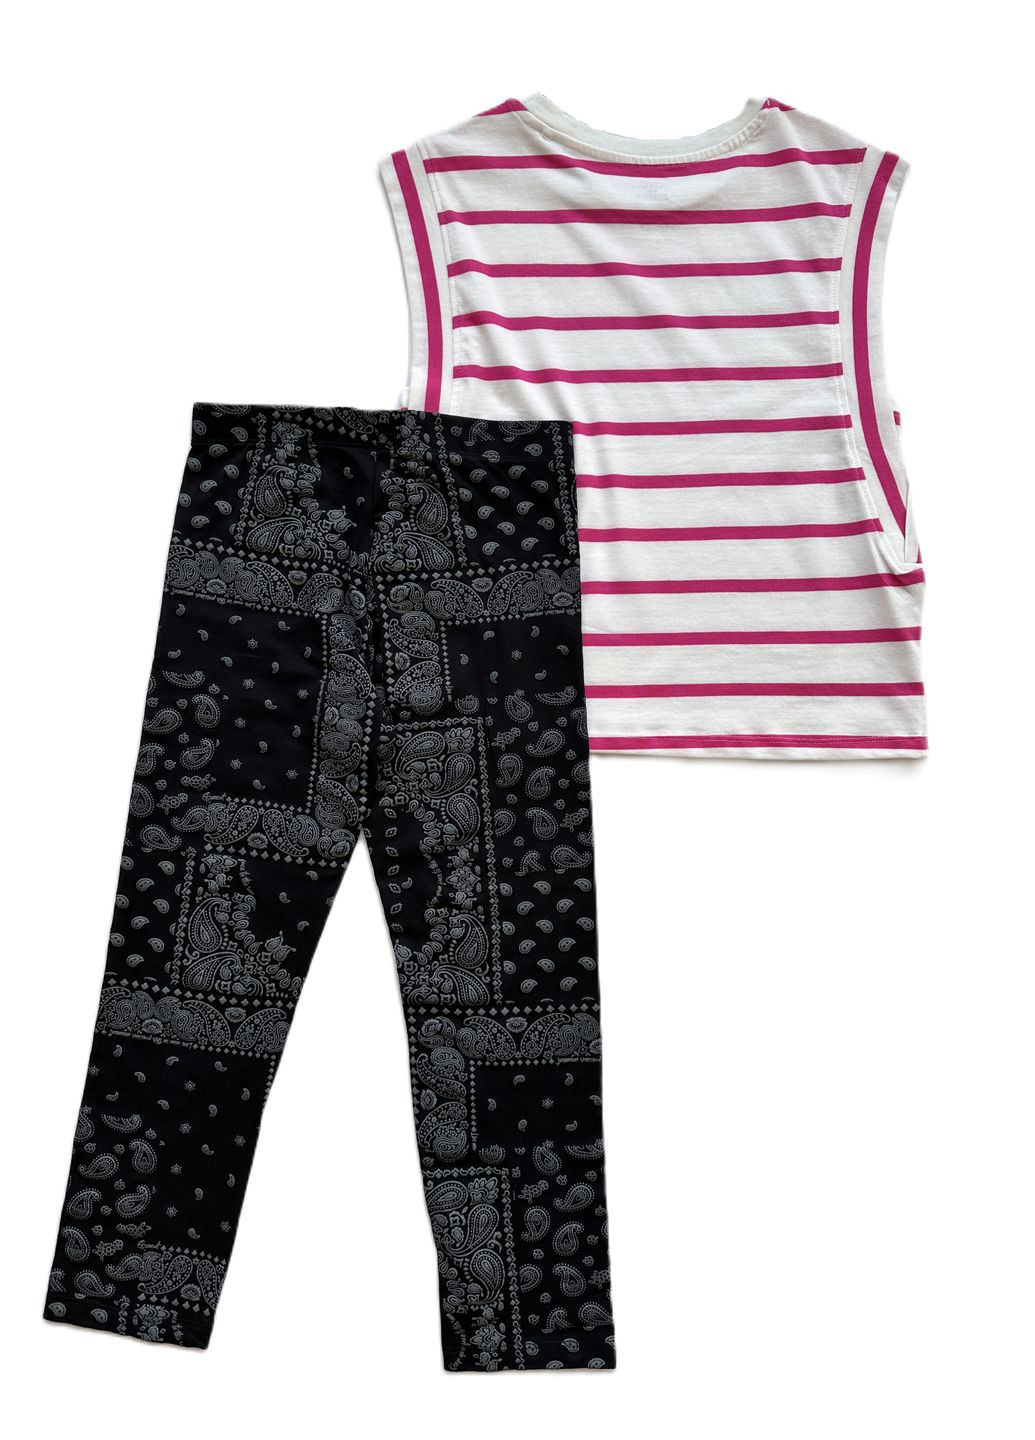 Розовый летний комплект для девочки футболка полосатая бело-розовая 2000-74 + леггинсы черные трикотажные 2000-79 (158 см) OVS